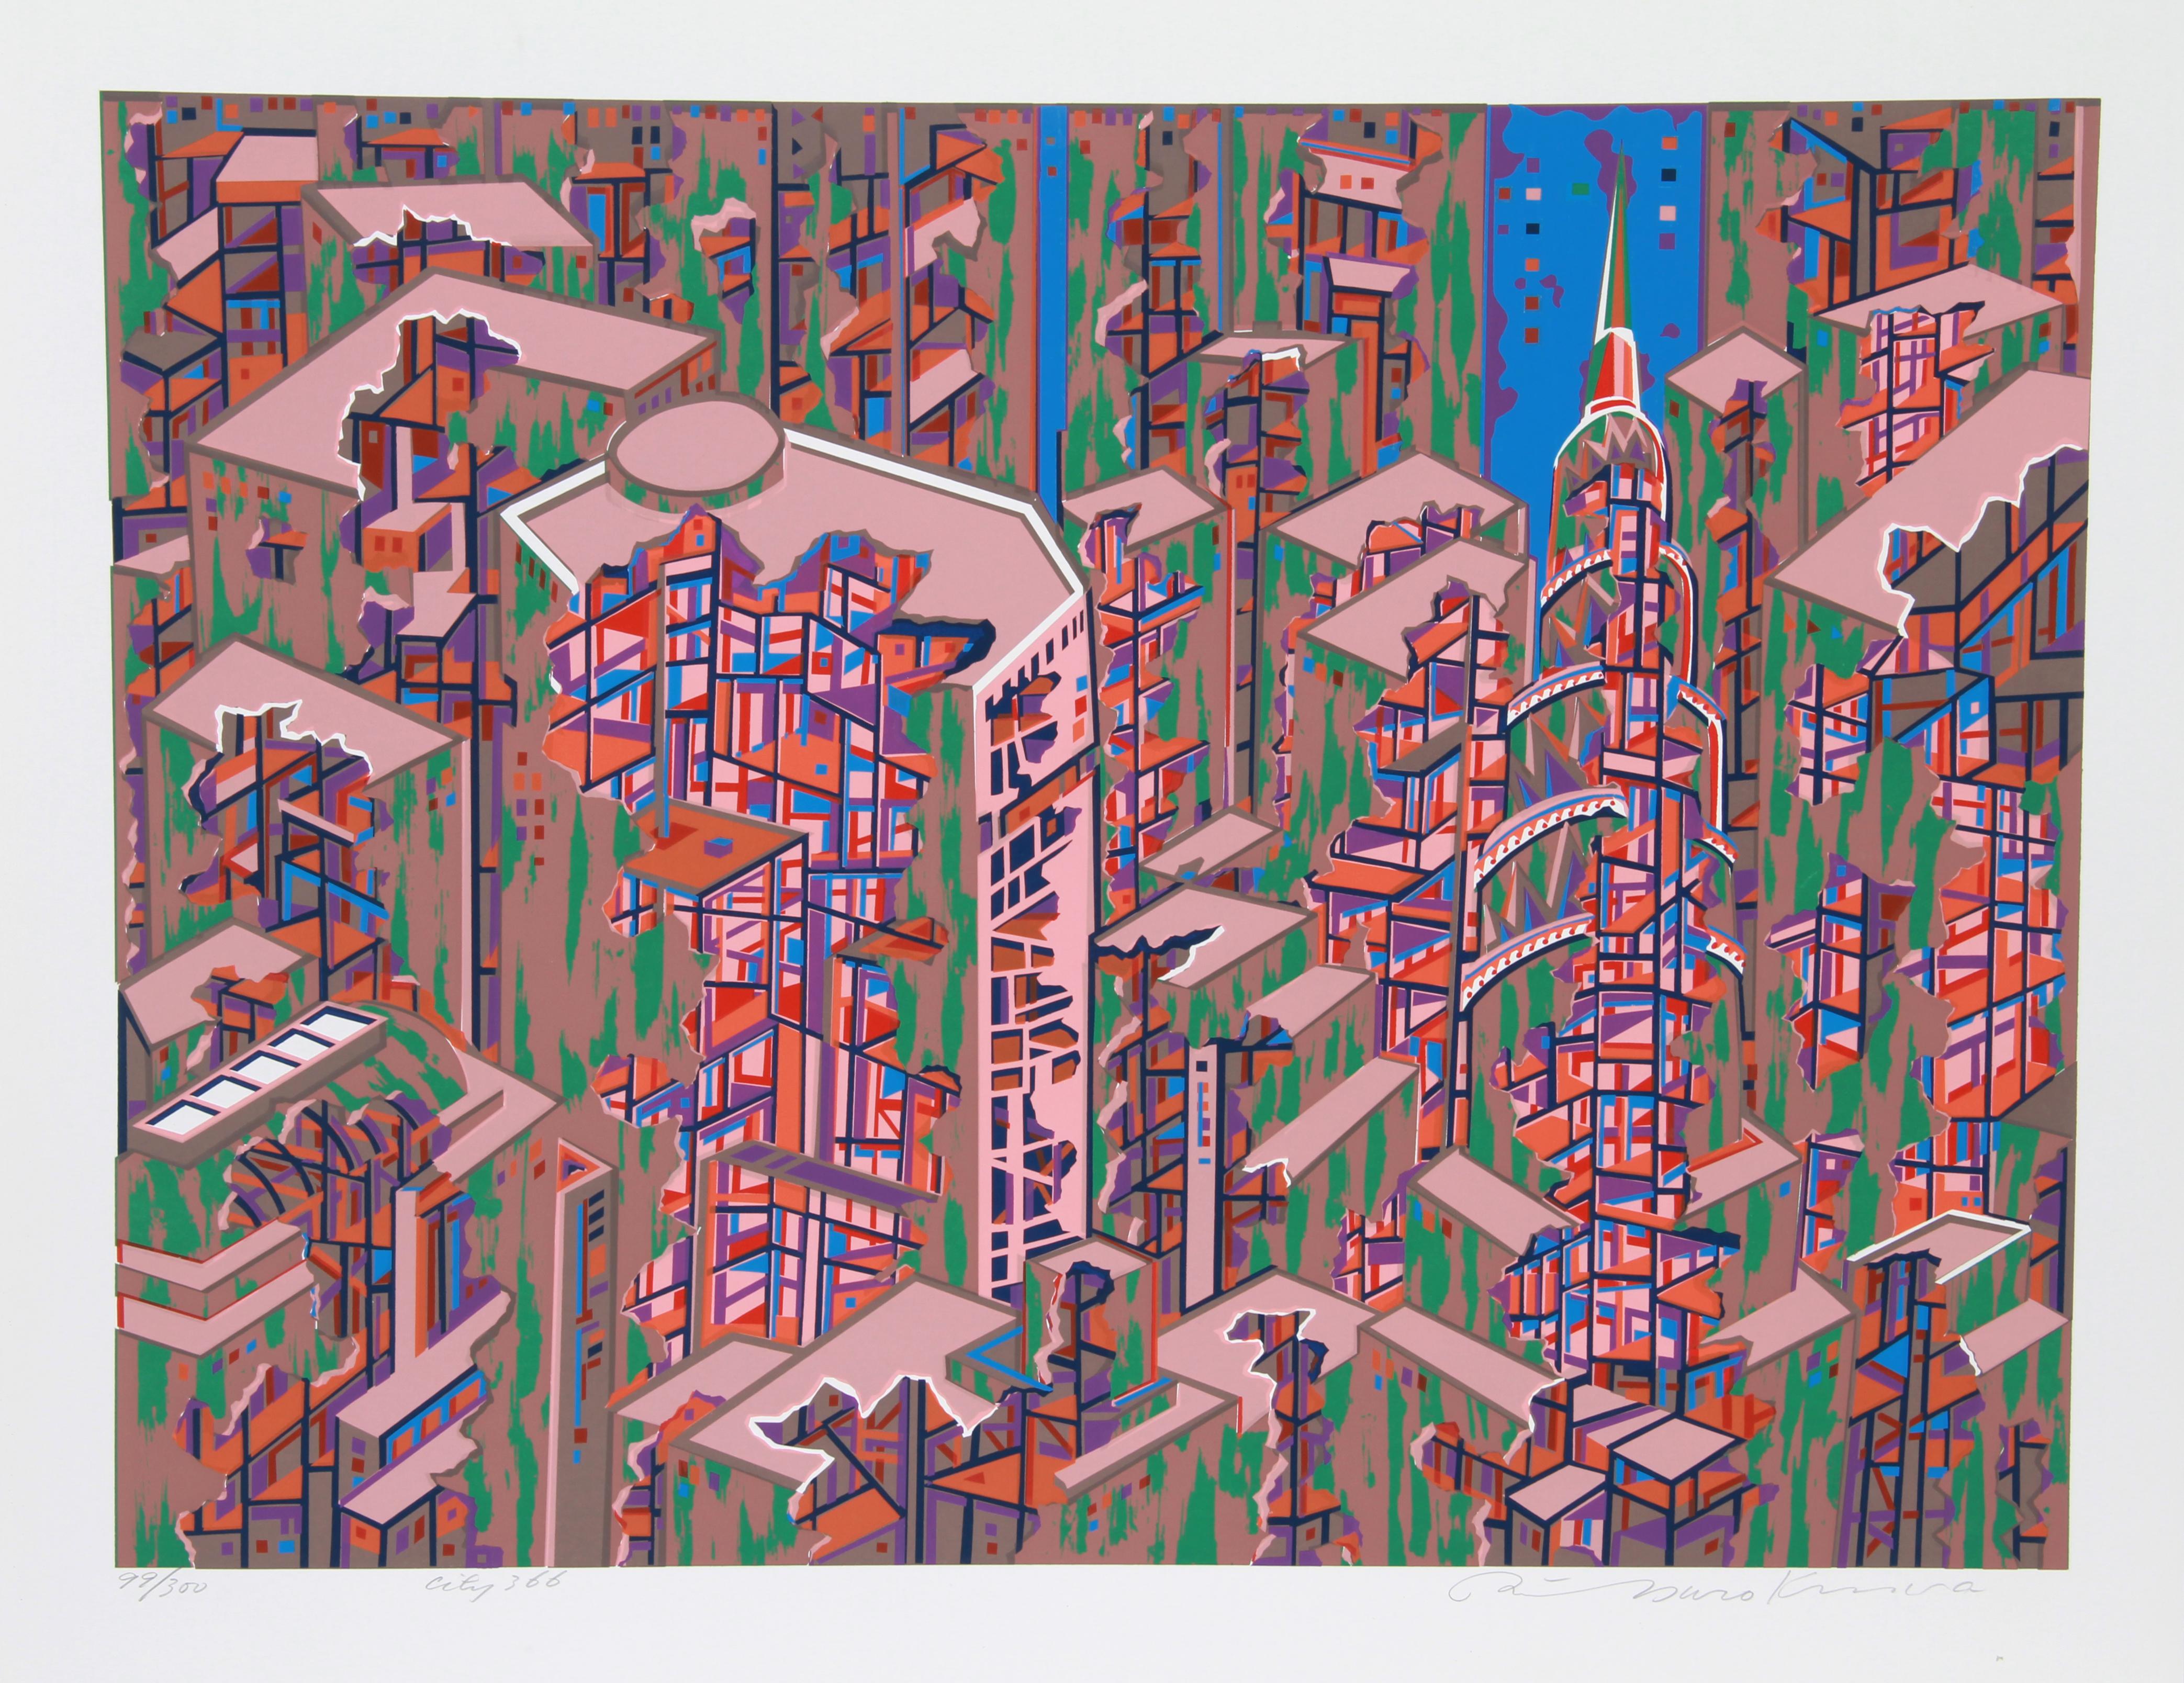 Artiste :  Risaburo Kimura, Japonais (1924 - )
Titre :  Ville 366
Année :  1971
Moyen :  Sérigraphie, signée et numérotée au crayon
Edition :  300
Taille de l'image :  25 x 20 pouces 
Taille :  22.5 in. x 28.5 in. (57,15 cm x 72,39 cm)